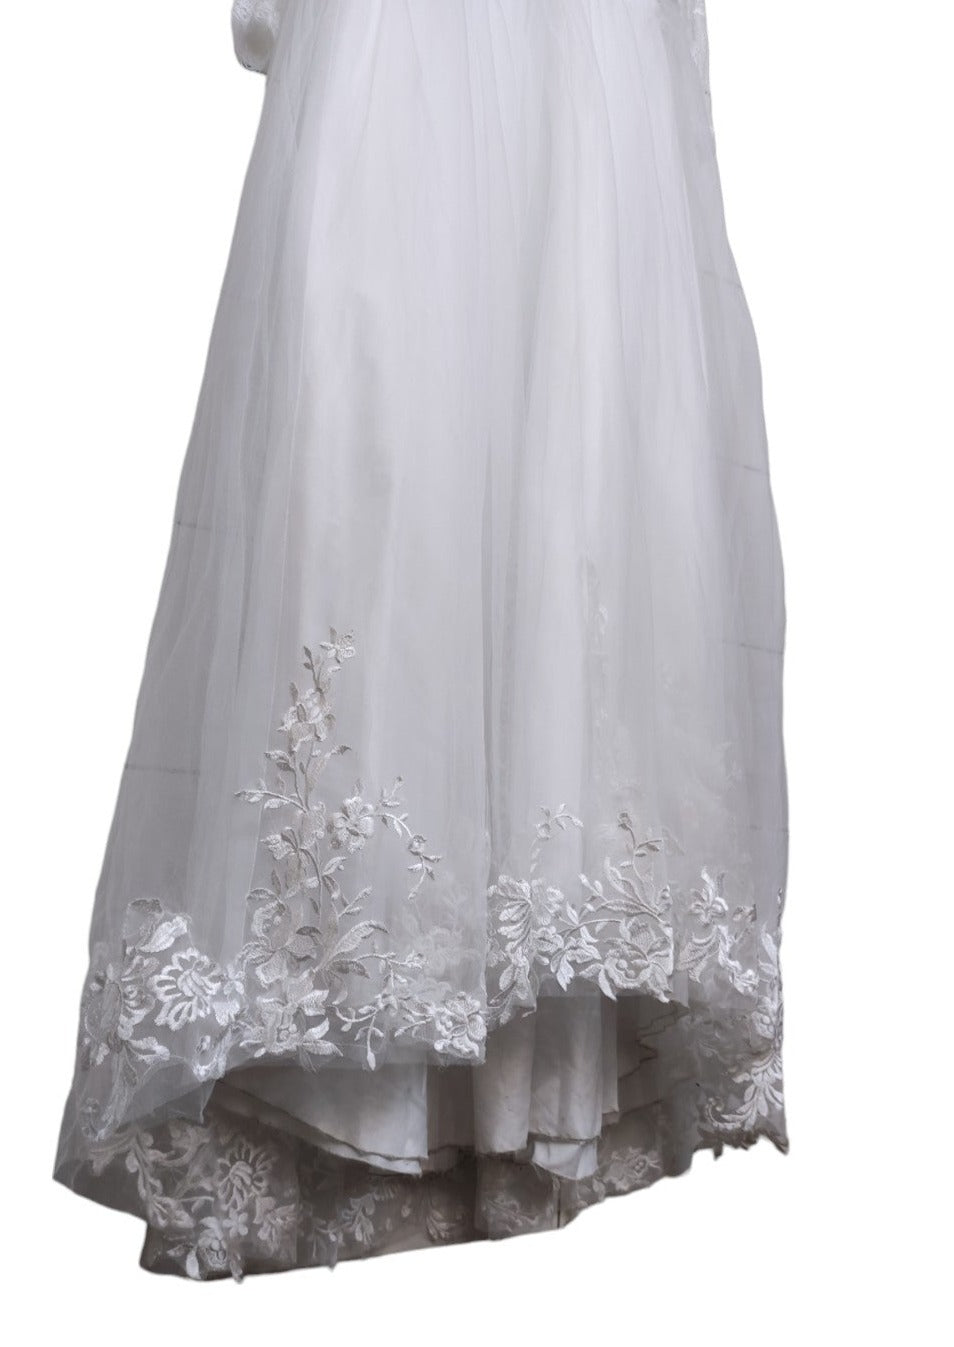 Φόρεμα Παρανύμφων με Τούλι σε Λευκό Χρώμα (5-6 ετών)